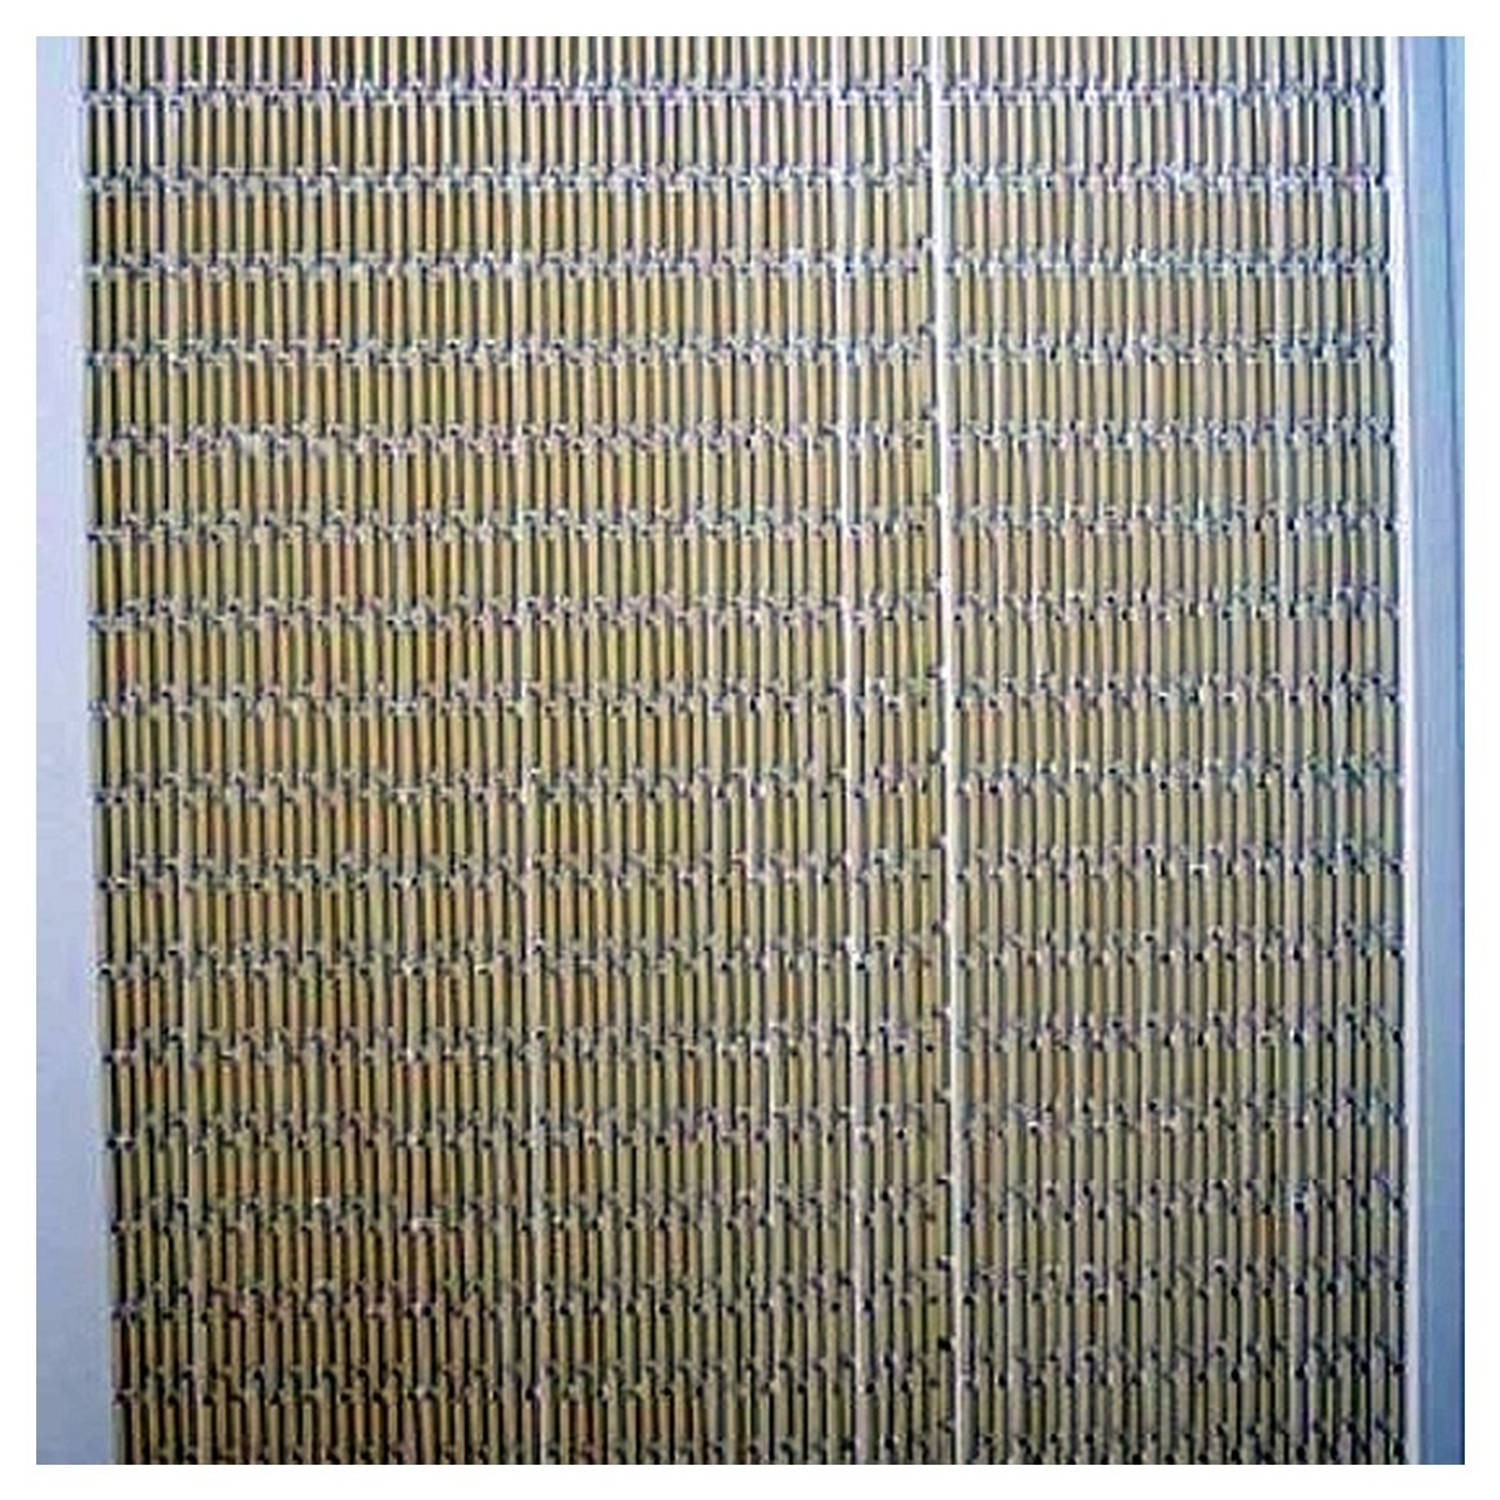 Lesli vliegengordijn beige pvc staafjes 100 x 230 cm